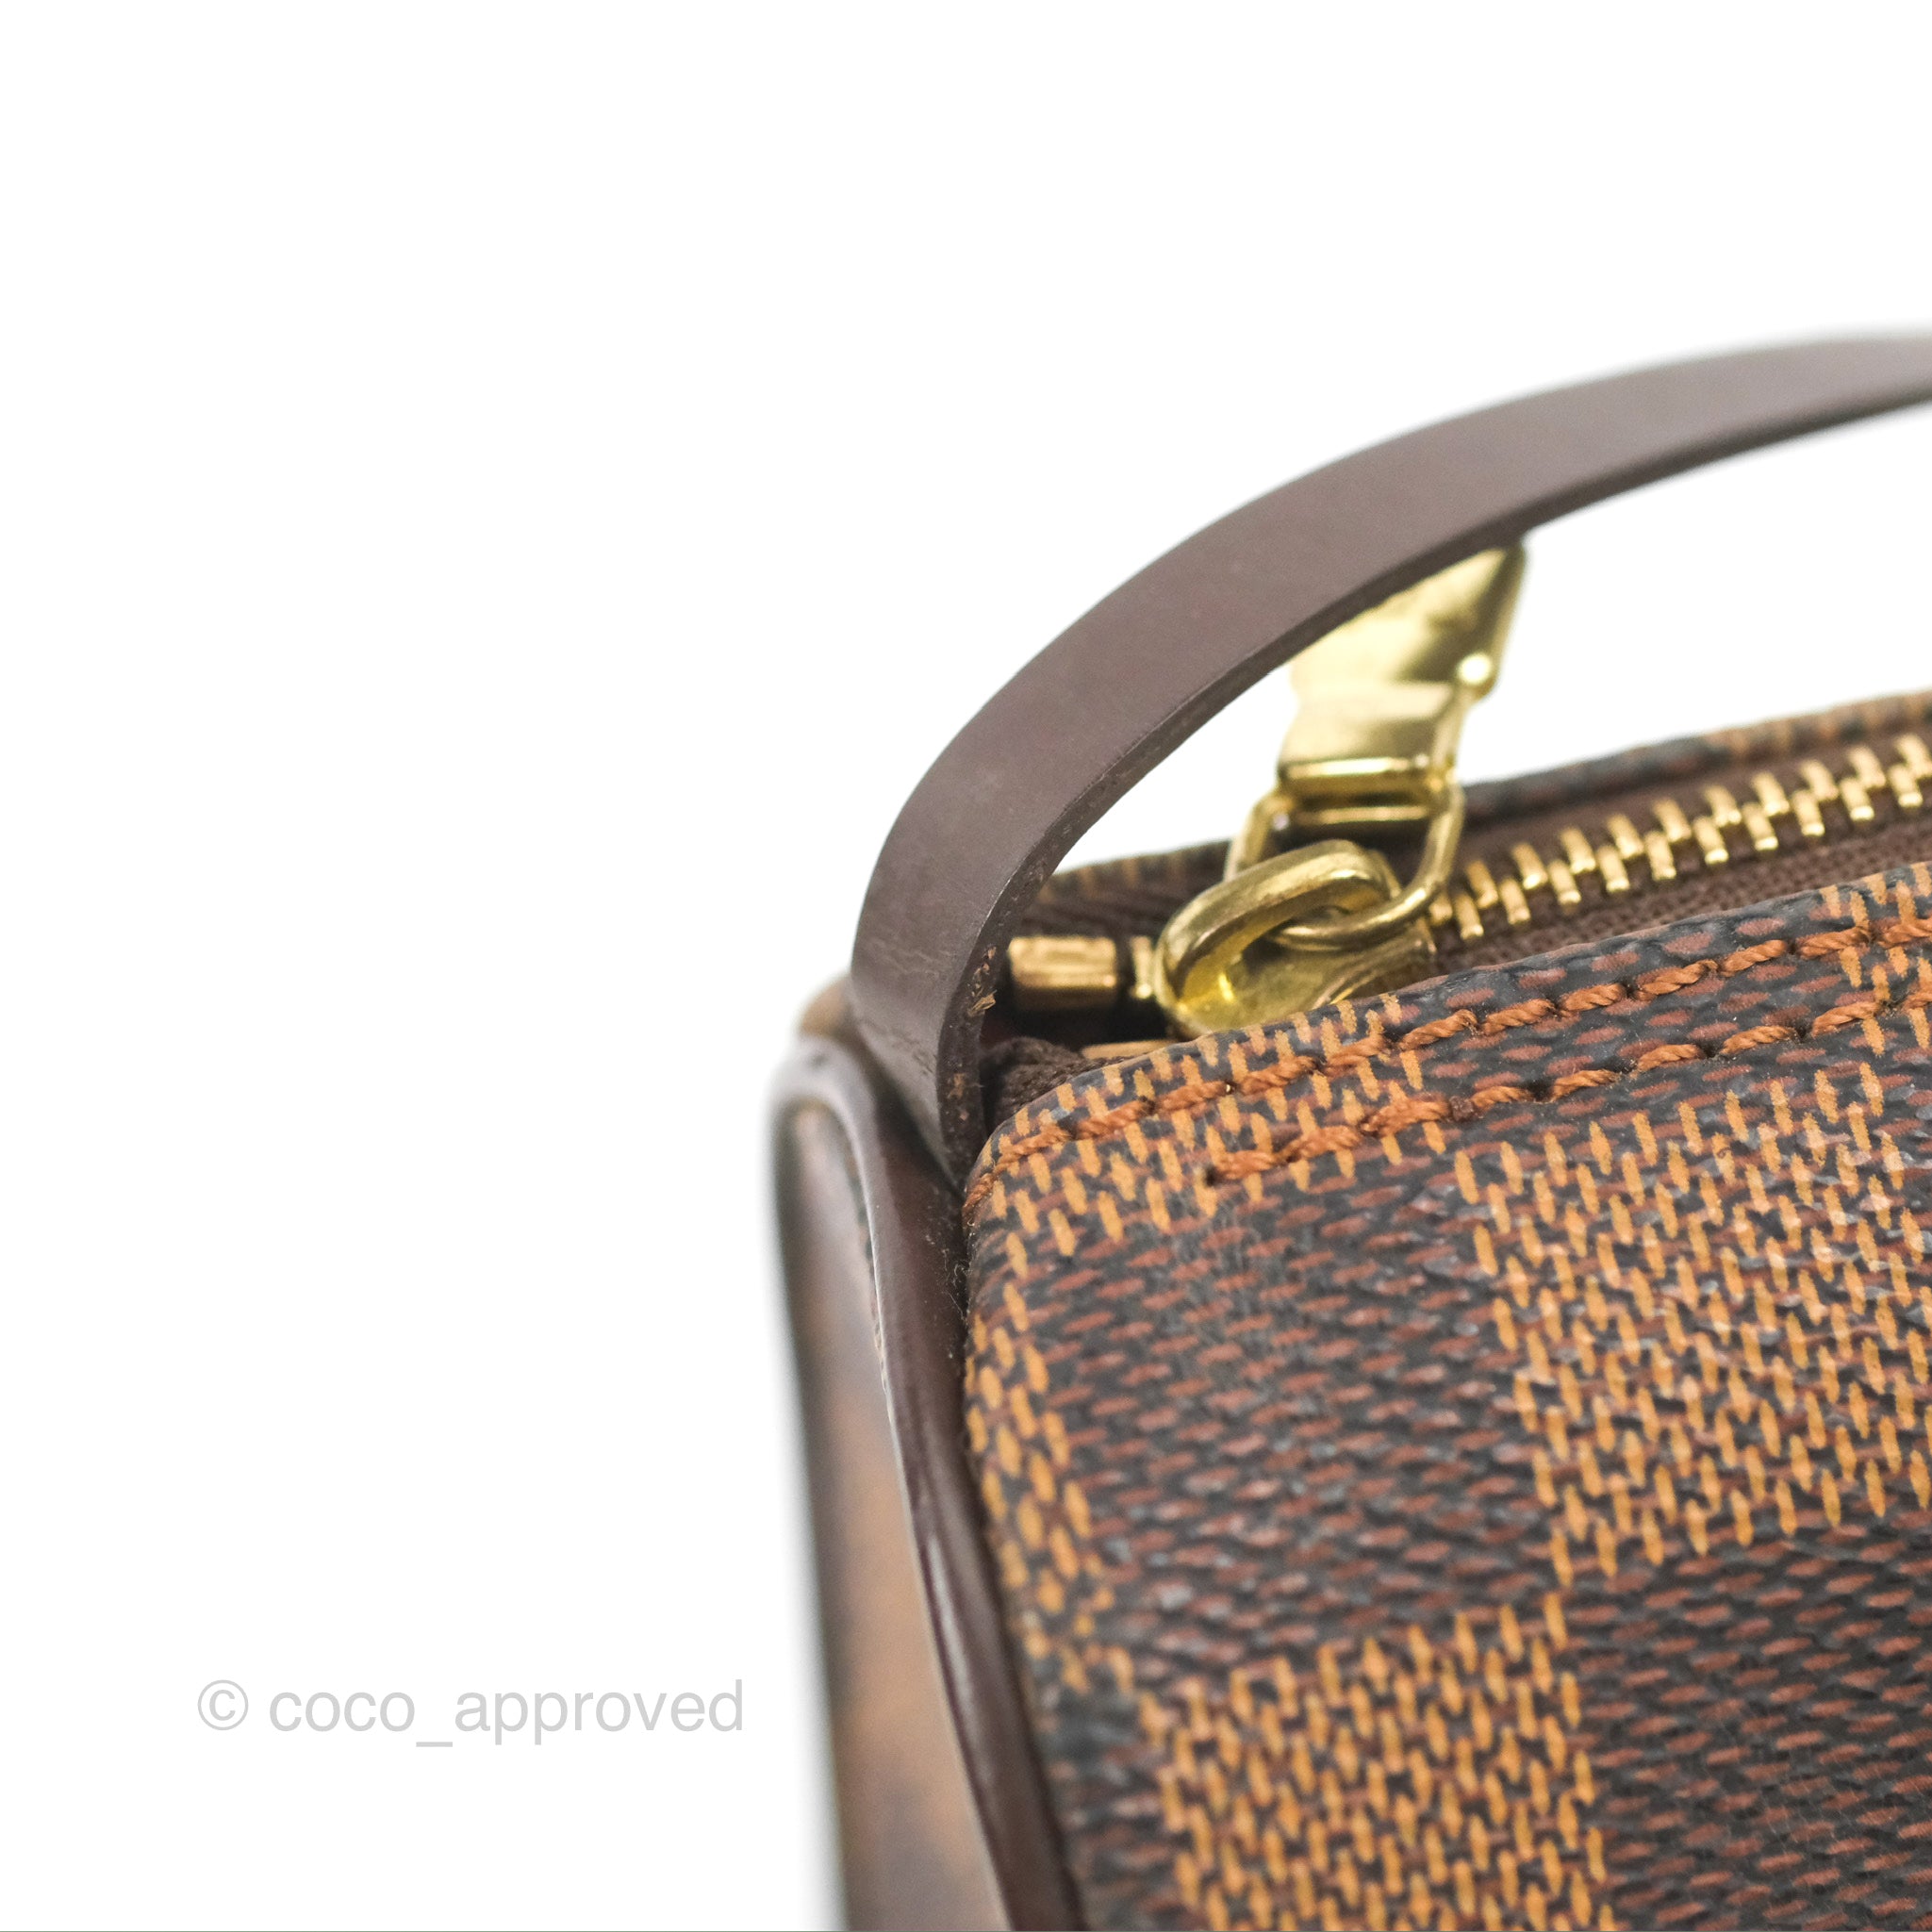 Louis Vuitton Damier Ebene Papillon 30 Handbag – Italy Station